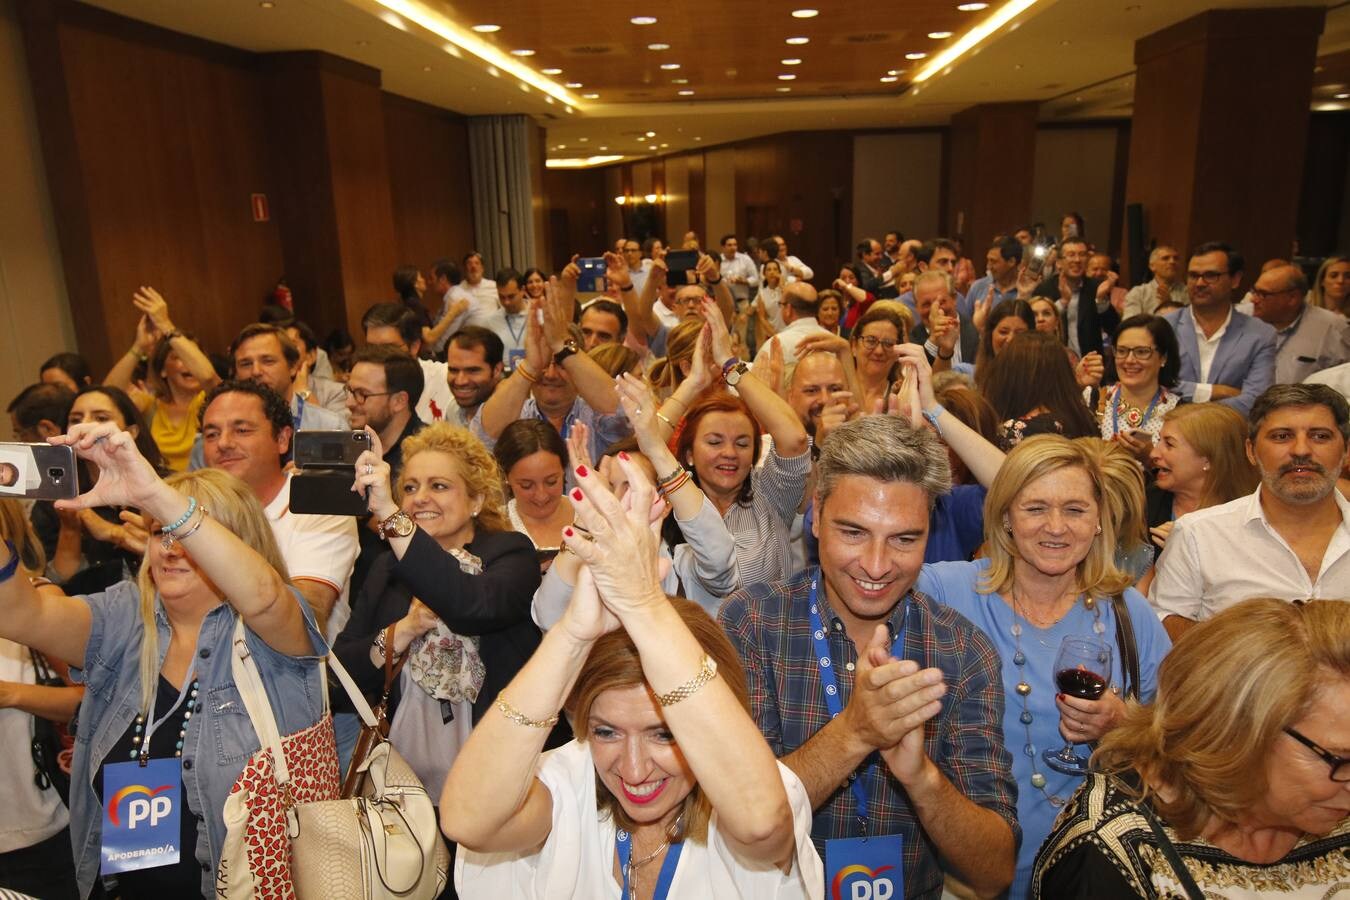 El triunfo del PP en Córdoba, en imágenes